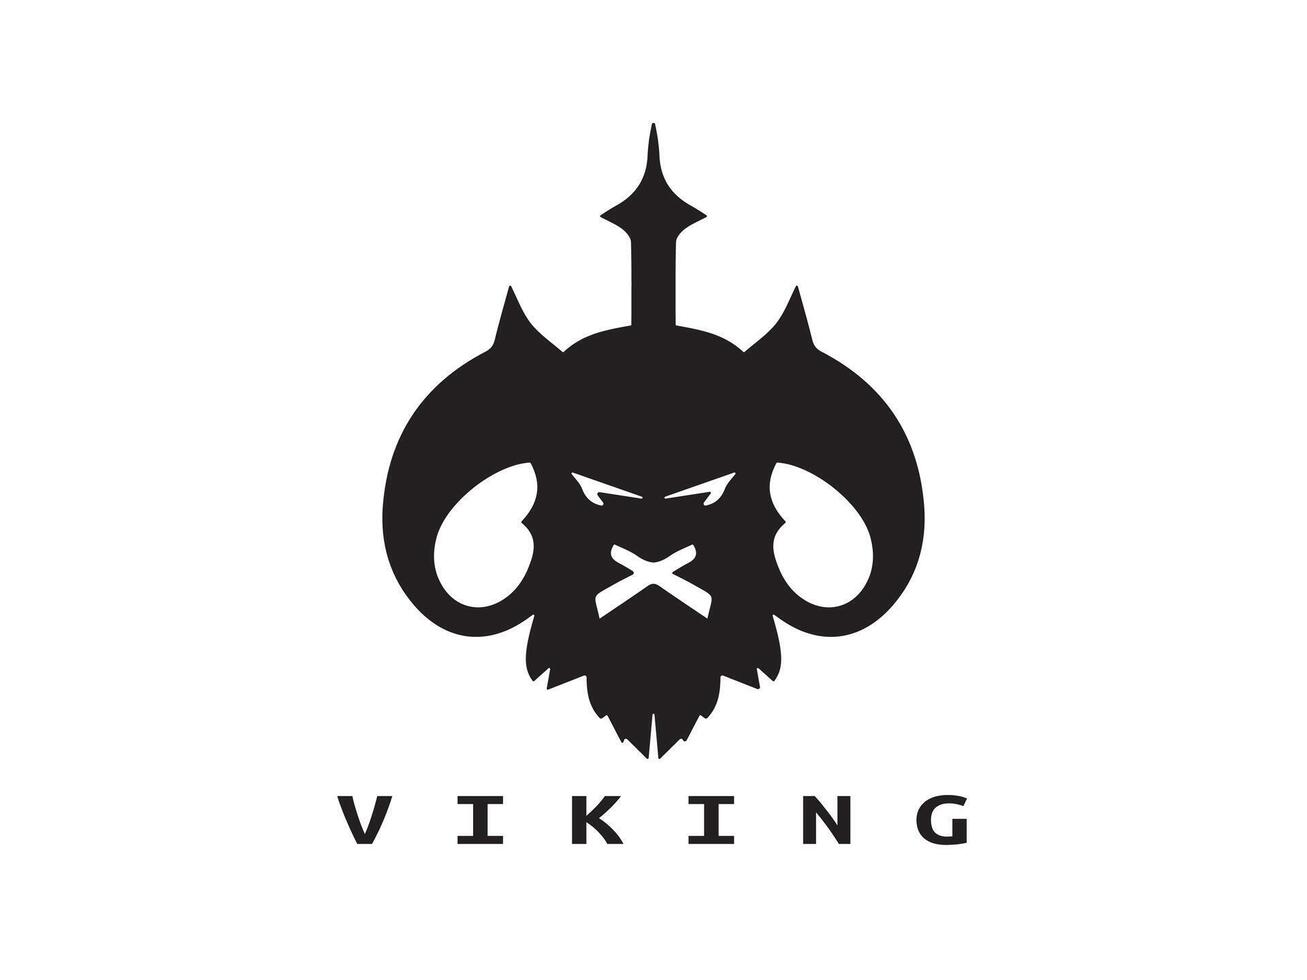 Wikinger Kopf Gesicht Logo Vorlage vektor